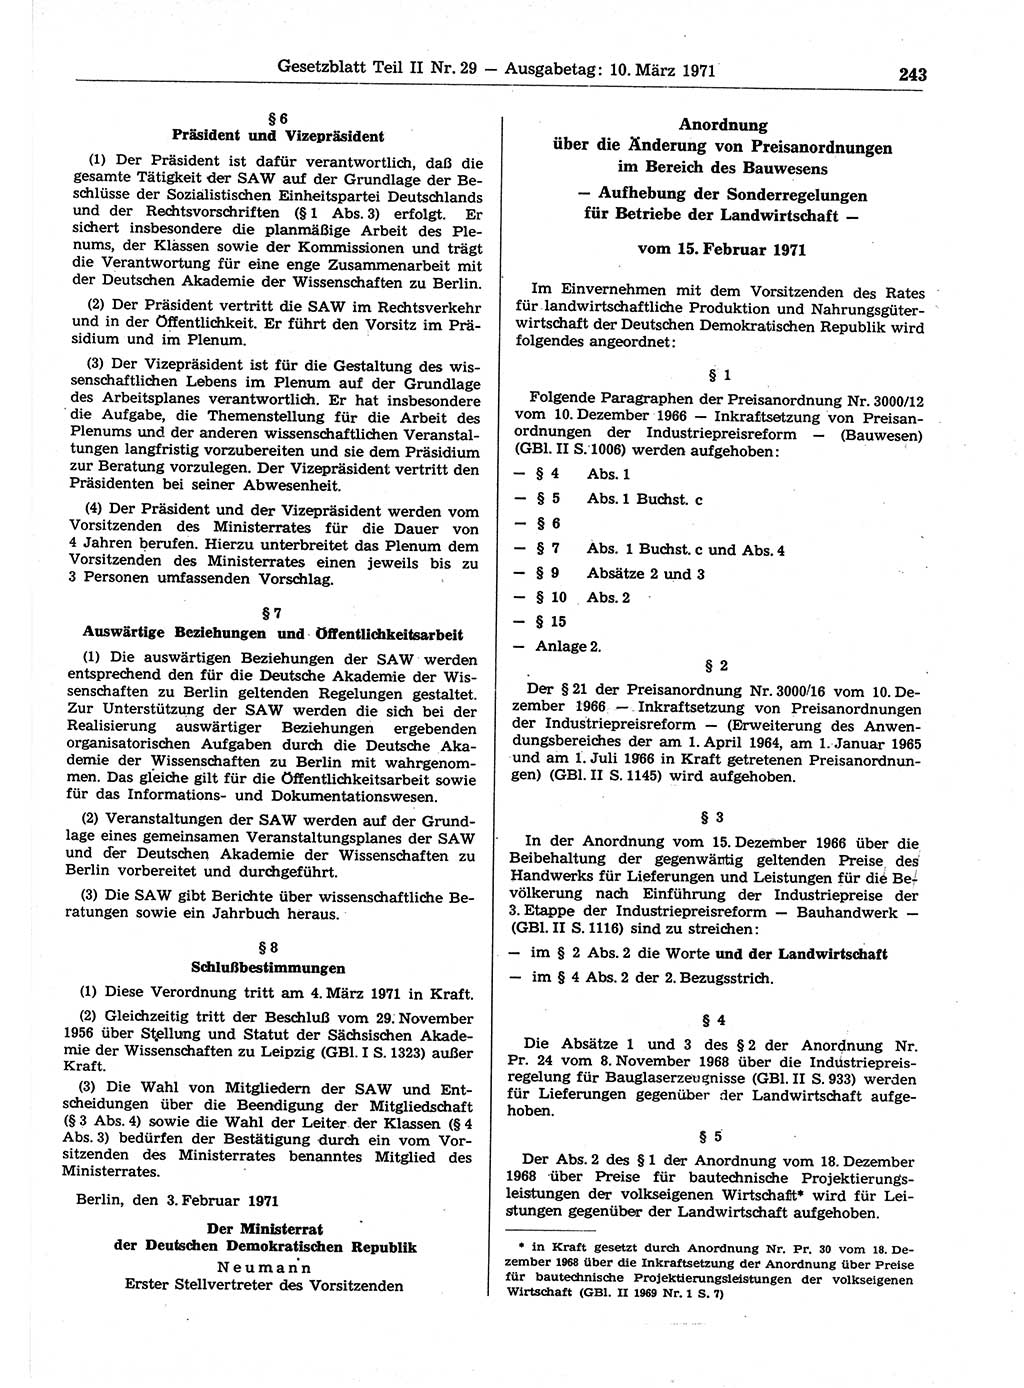 Gesetzblatt (GBl.) der Deutschen Demokratischen Republik (DDR) Teil ⅠⅠ 1971, Seite 243 (GBl. DDR ⅠⅠ 1971, S. 243)